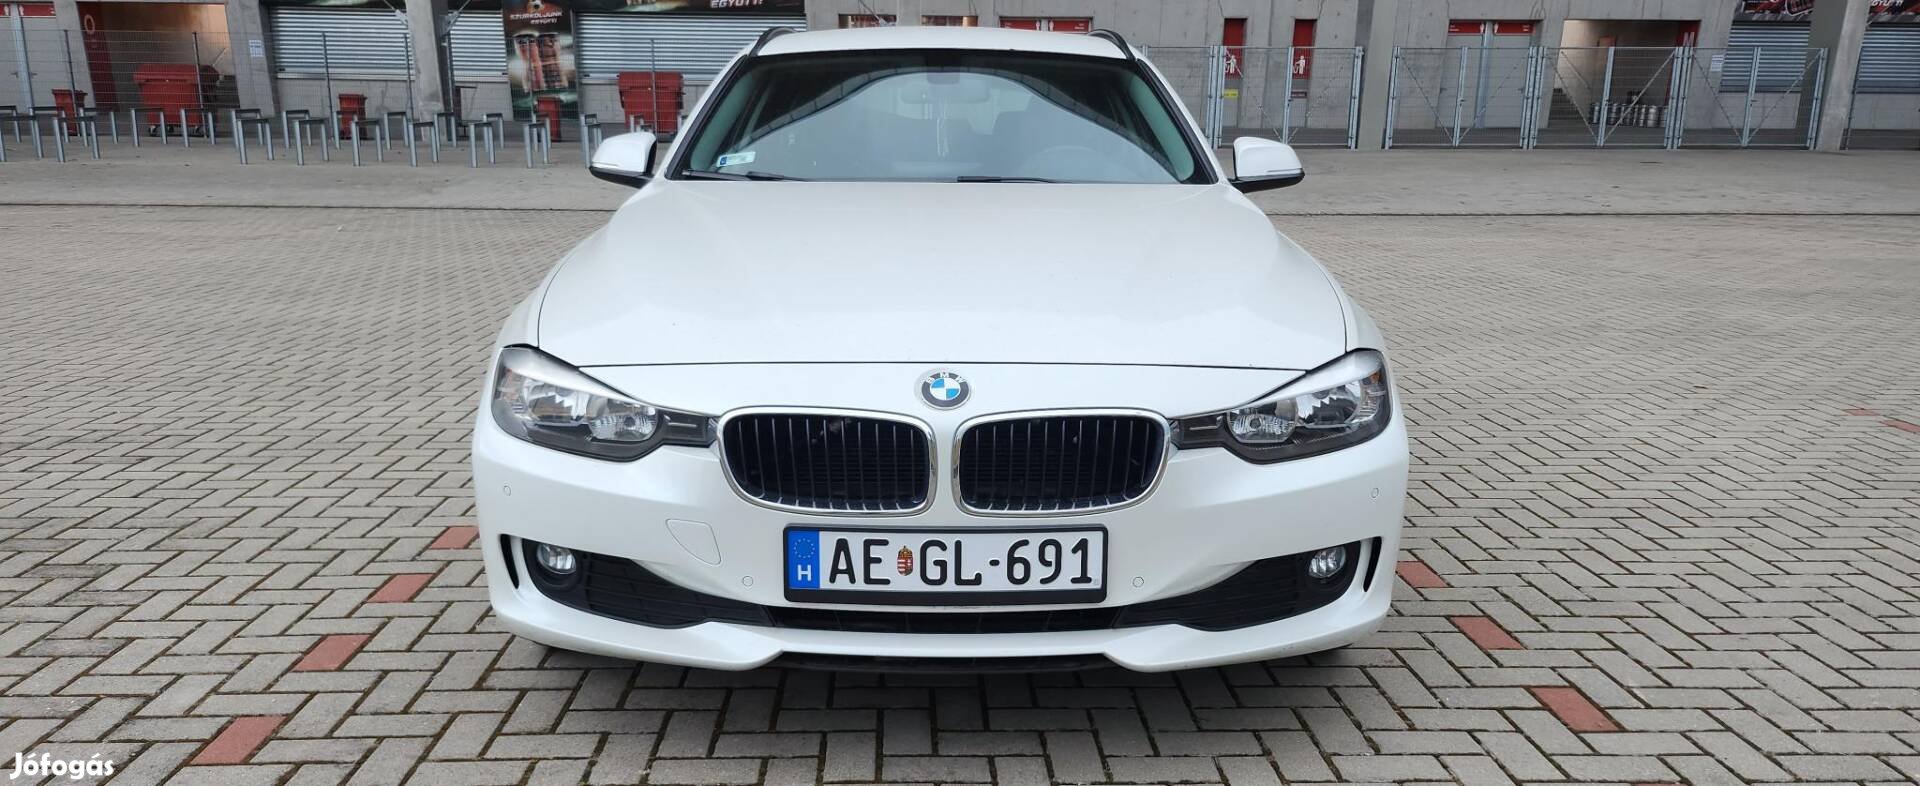 BMW 316d Touring 1.5év vizsga.Gyöngyház Fehér